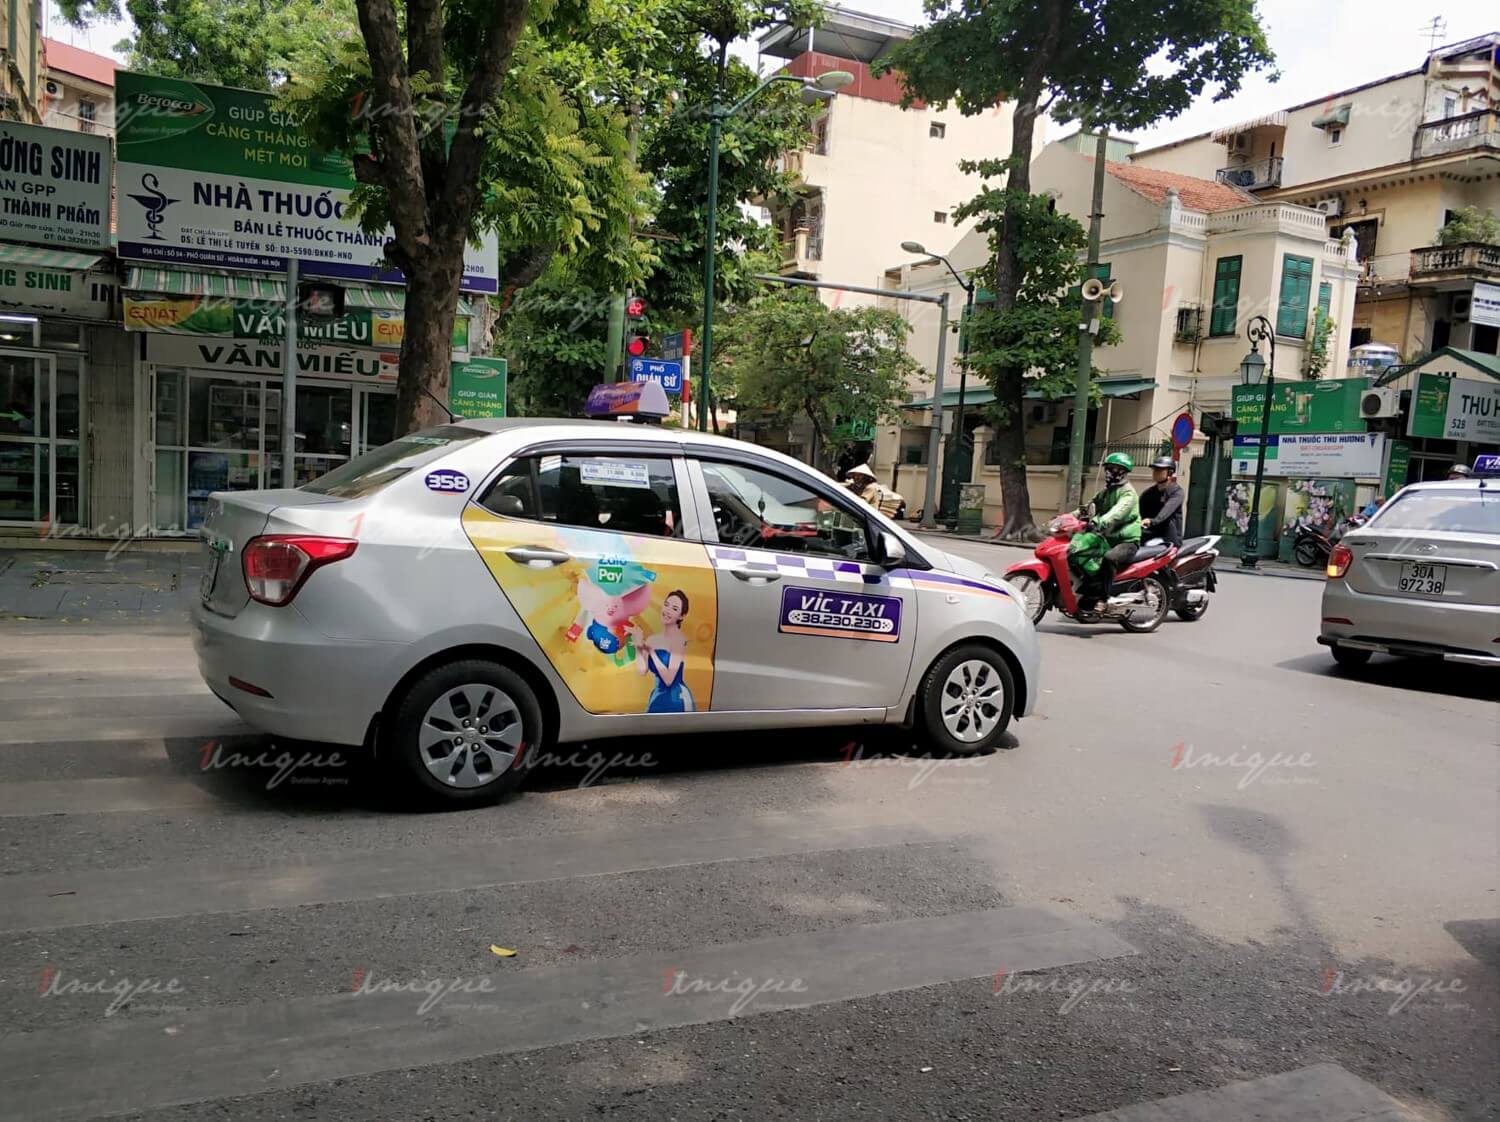 Quảng cáo trên VIC taxi tại Hà Nội